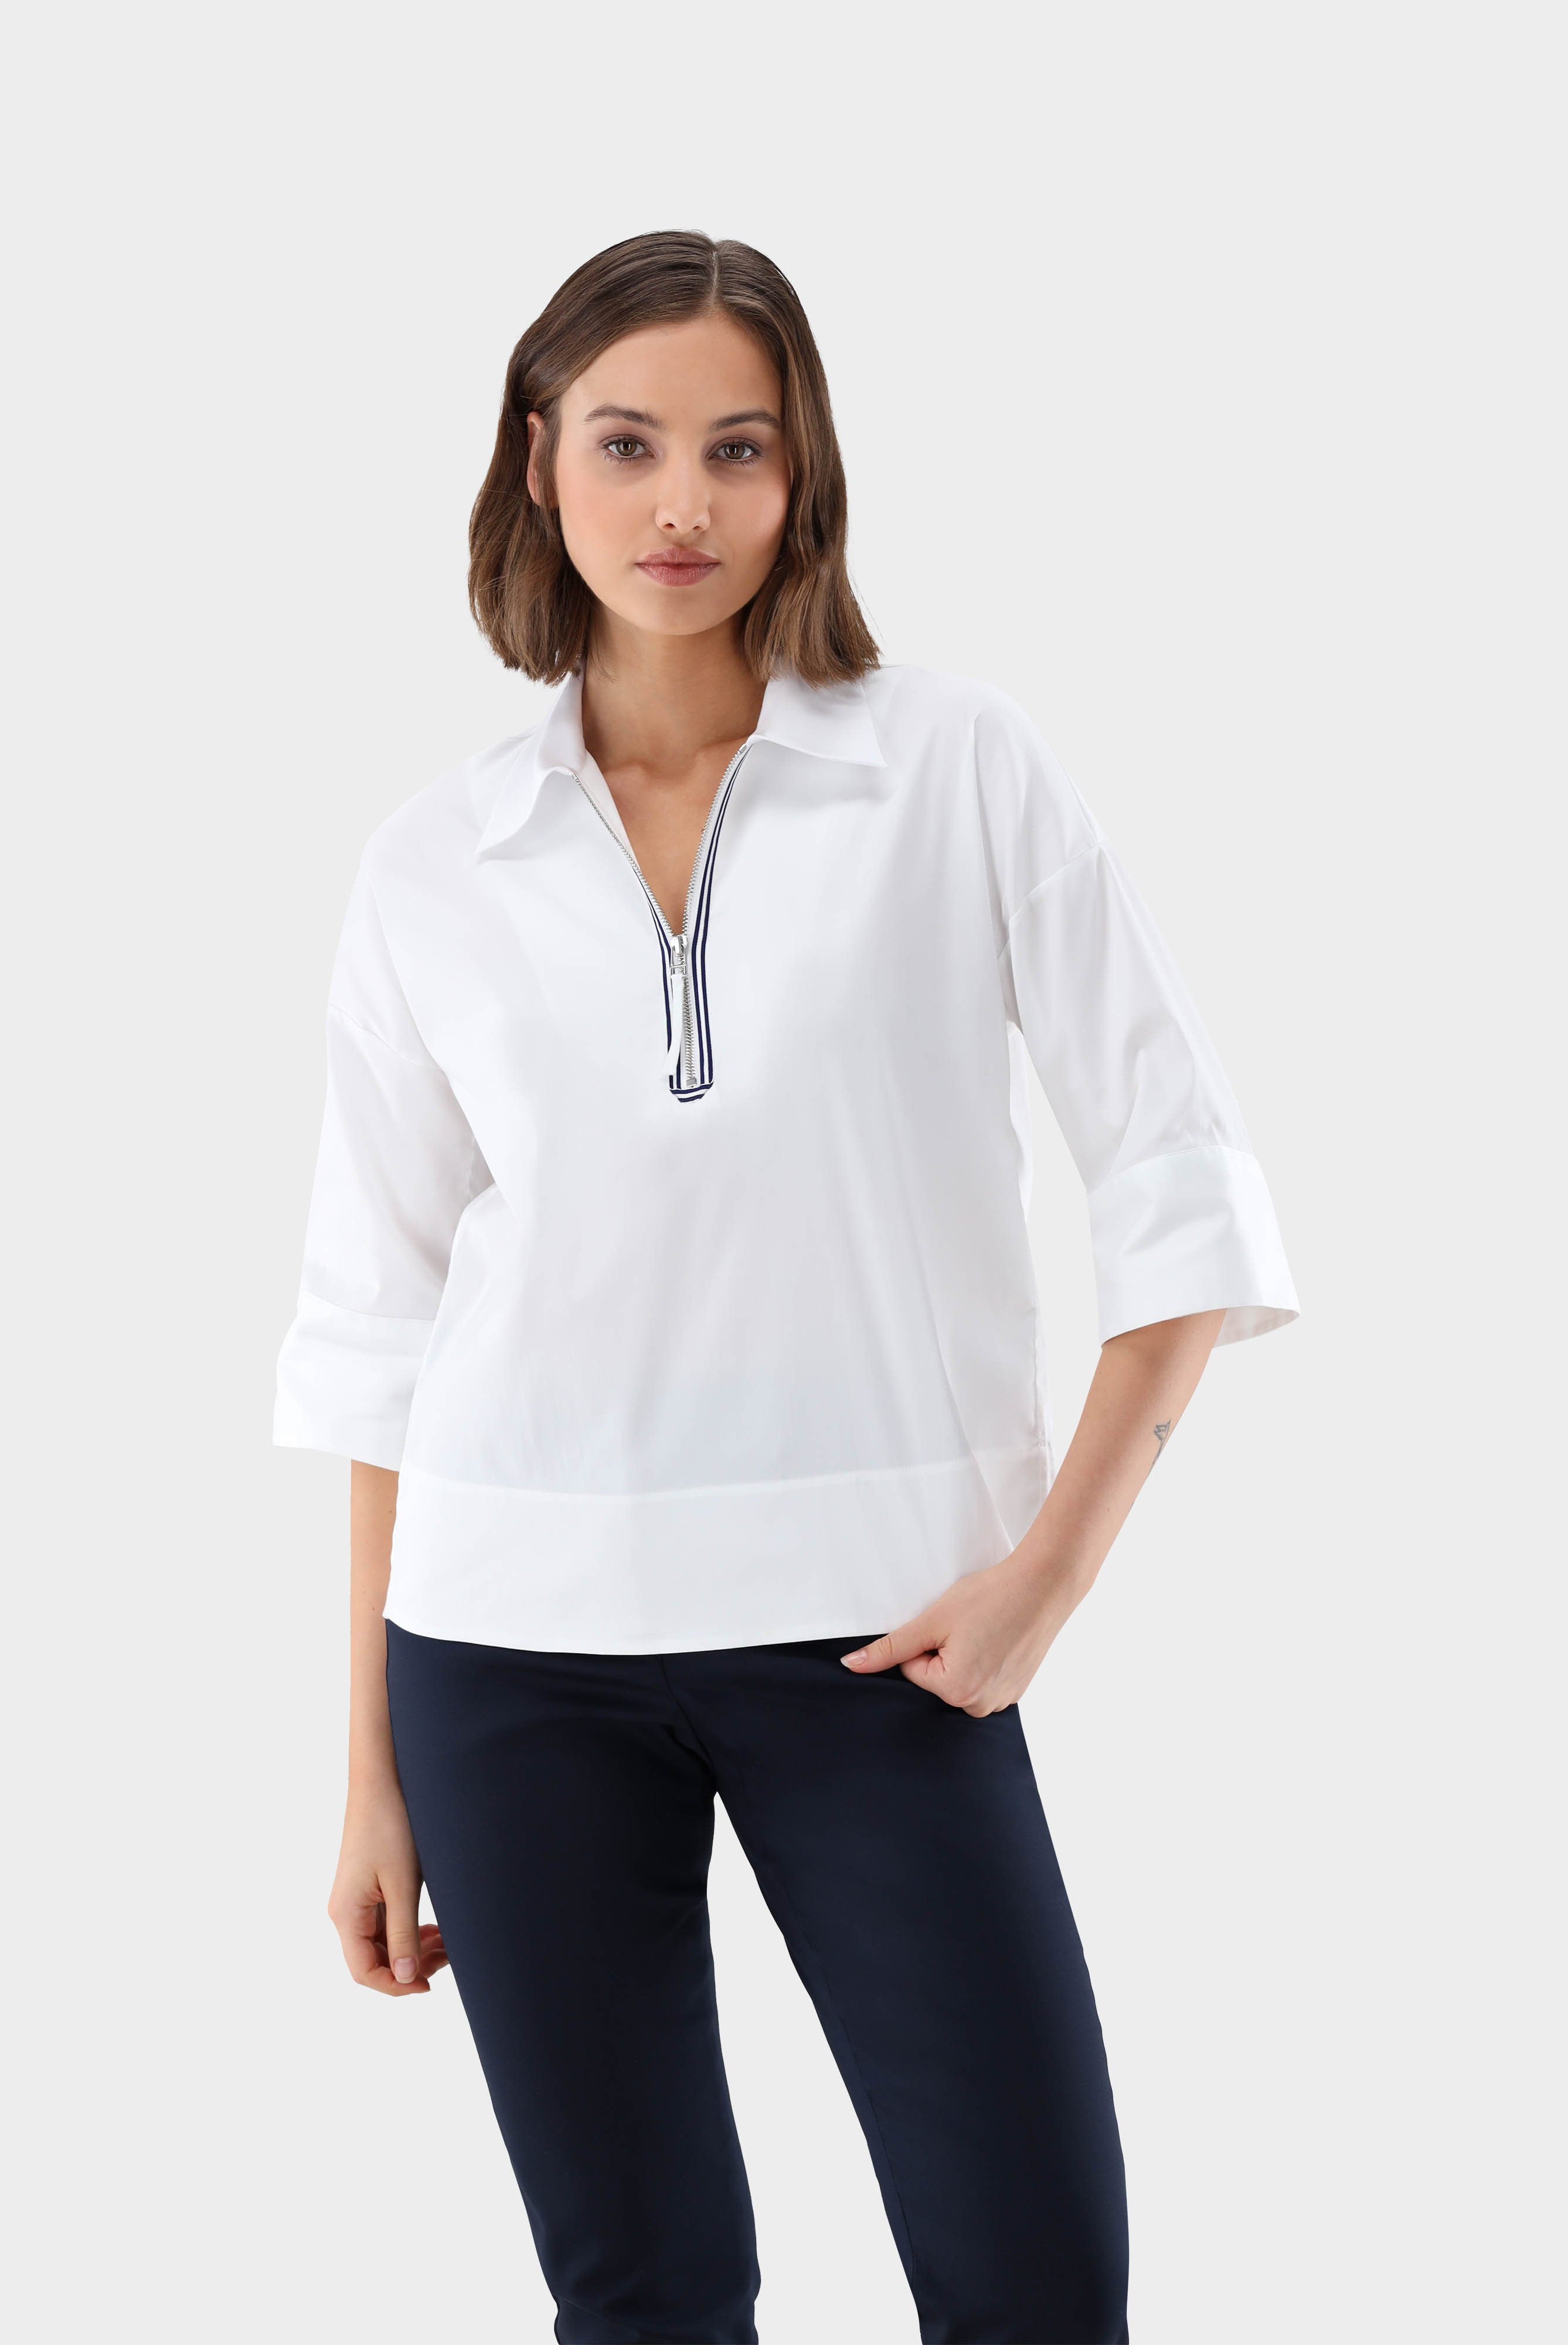 A-line zip neck shirt blouse